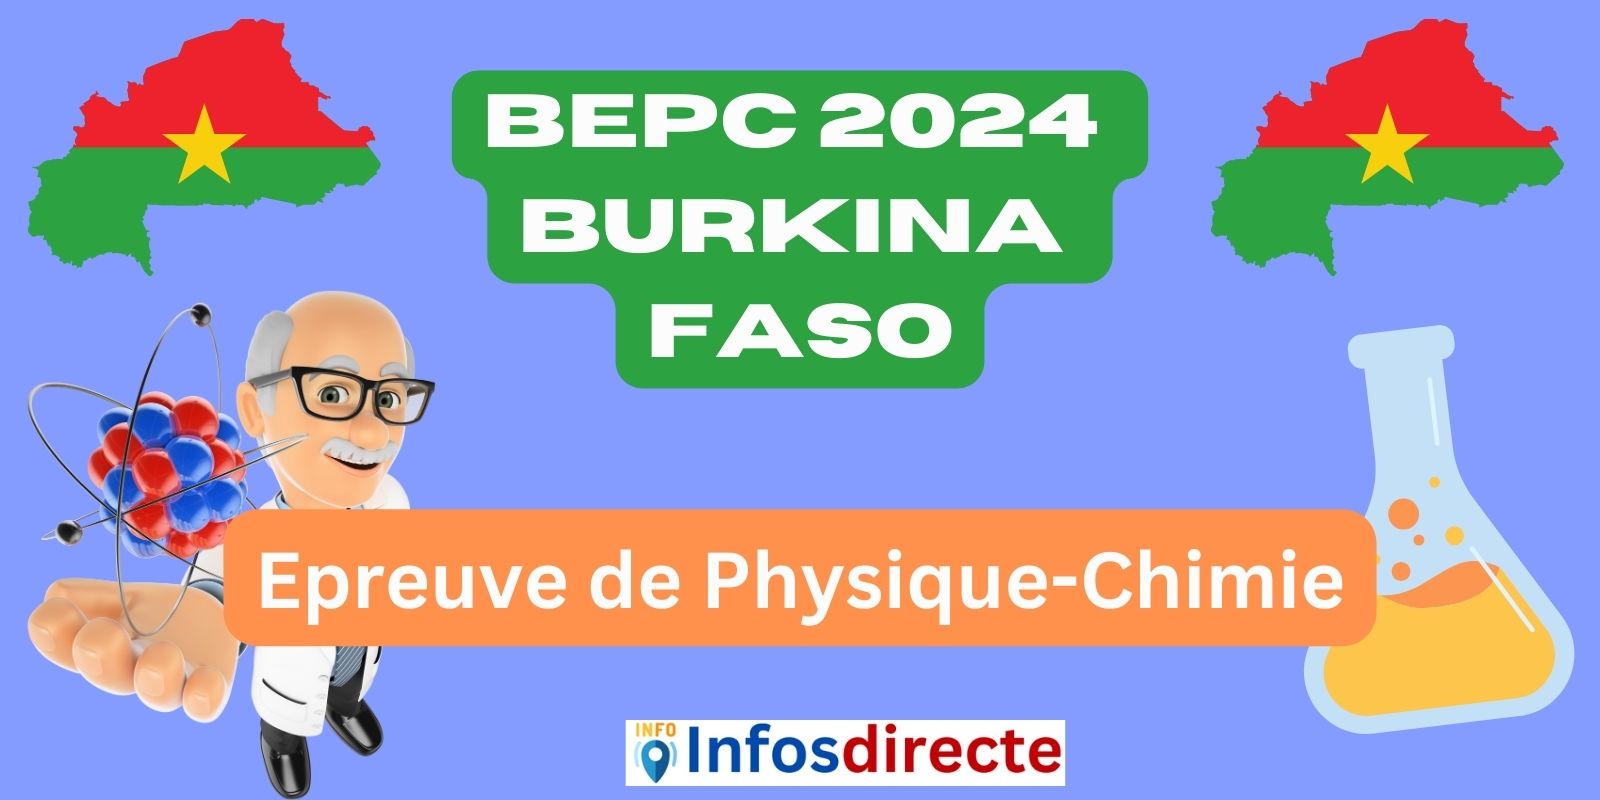 Epreuve de Physique-Chimie du BEPC 2024 au Burkina Faso